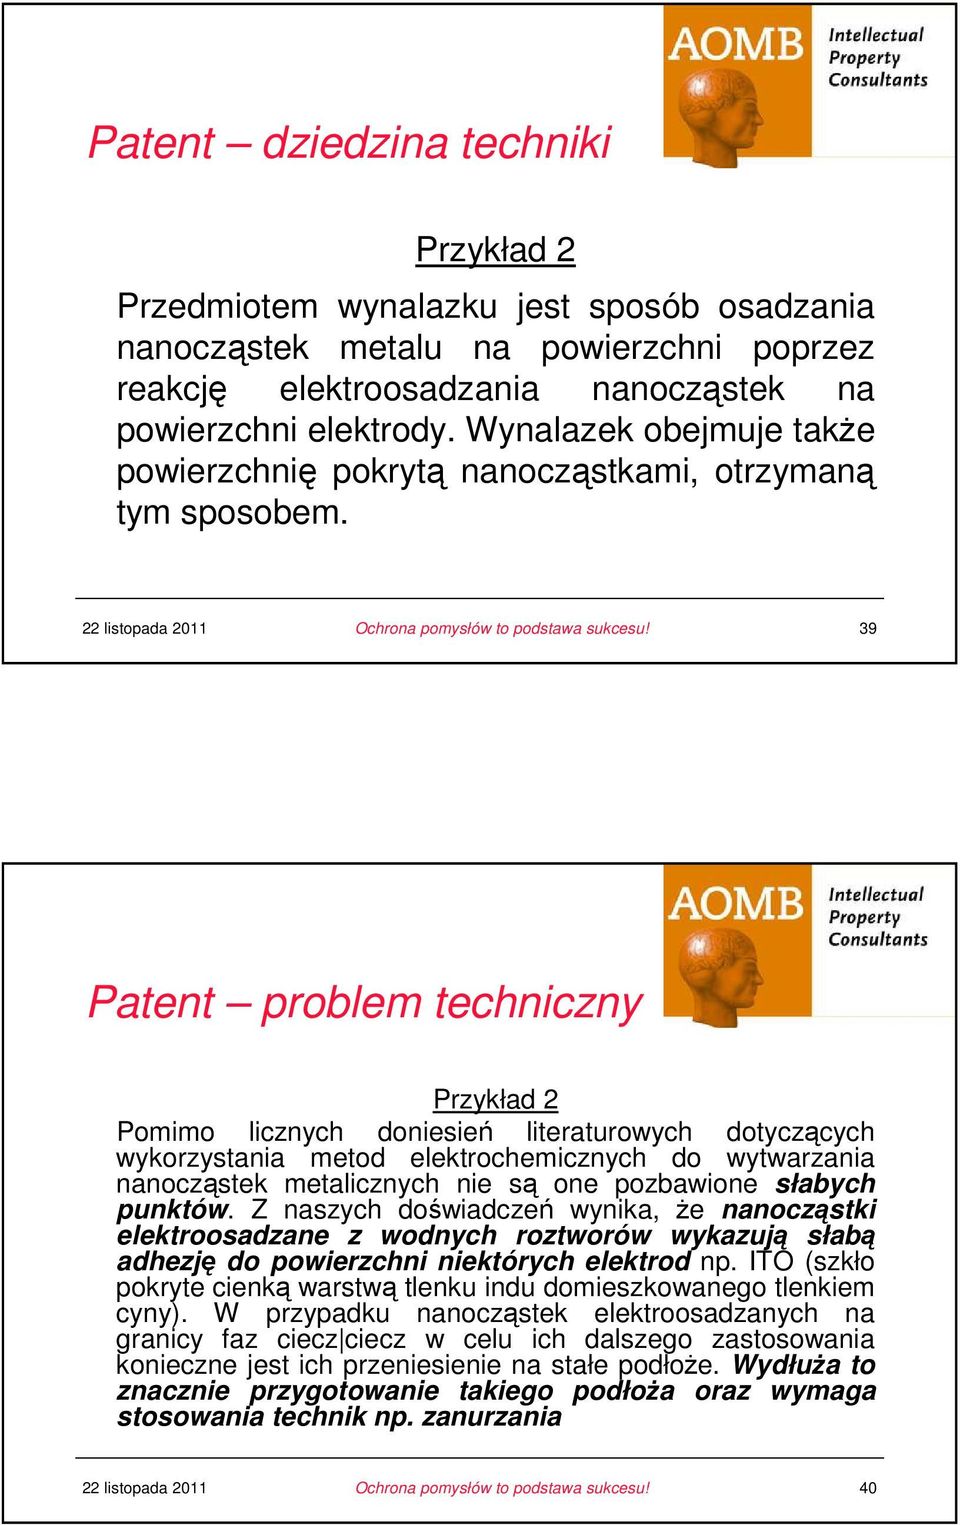 39 Patent problem techniczny u Przykład 2 u Pomimo licznych doniesień literaturowych dotyczących wykorzystania metod elektrochemicznych do wytwarzania nanocząstek metalicznych nie są one pozbawione